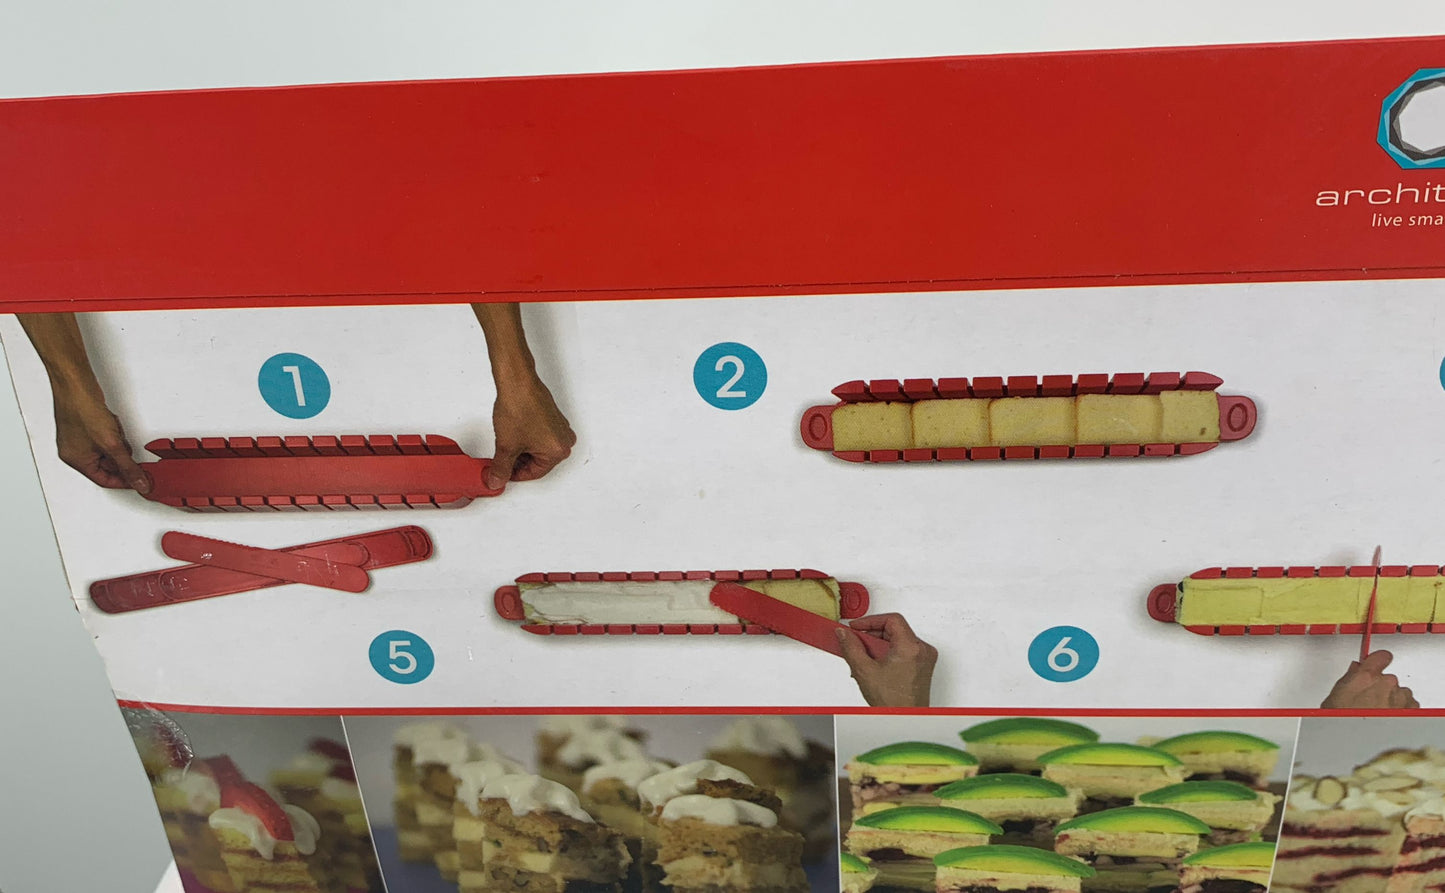 Architec New 5 Minute Stackable Appetizer Maker 4 Piece Set